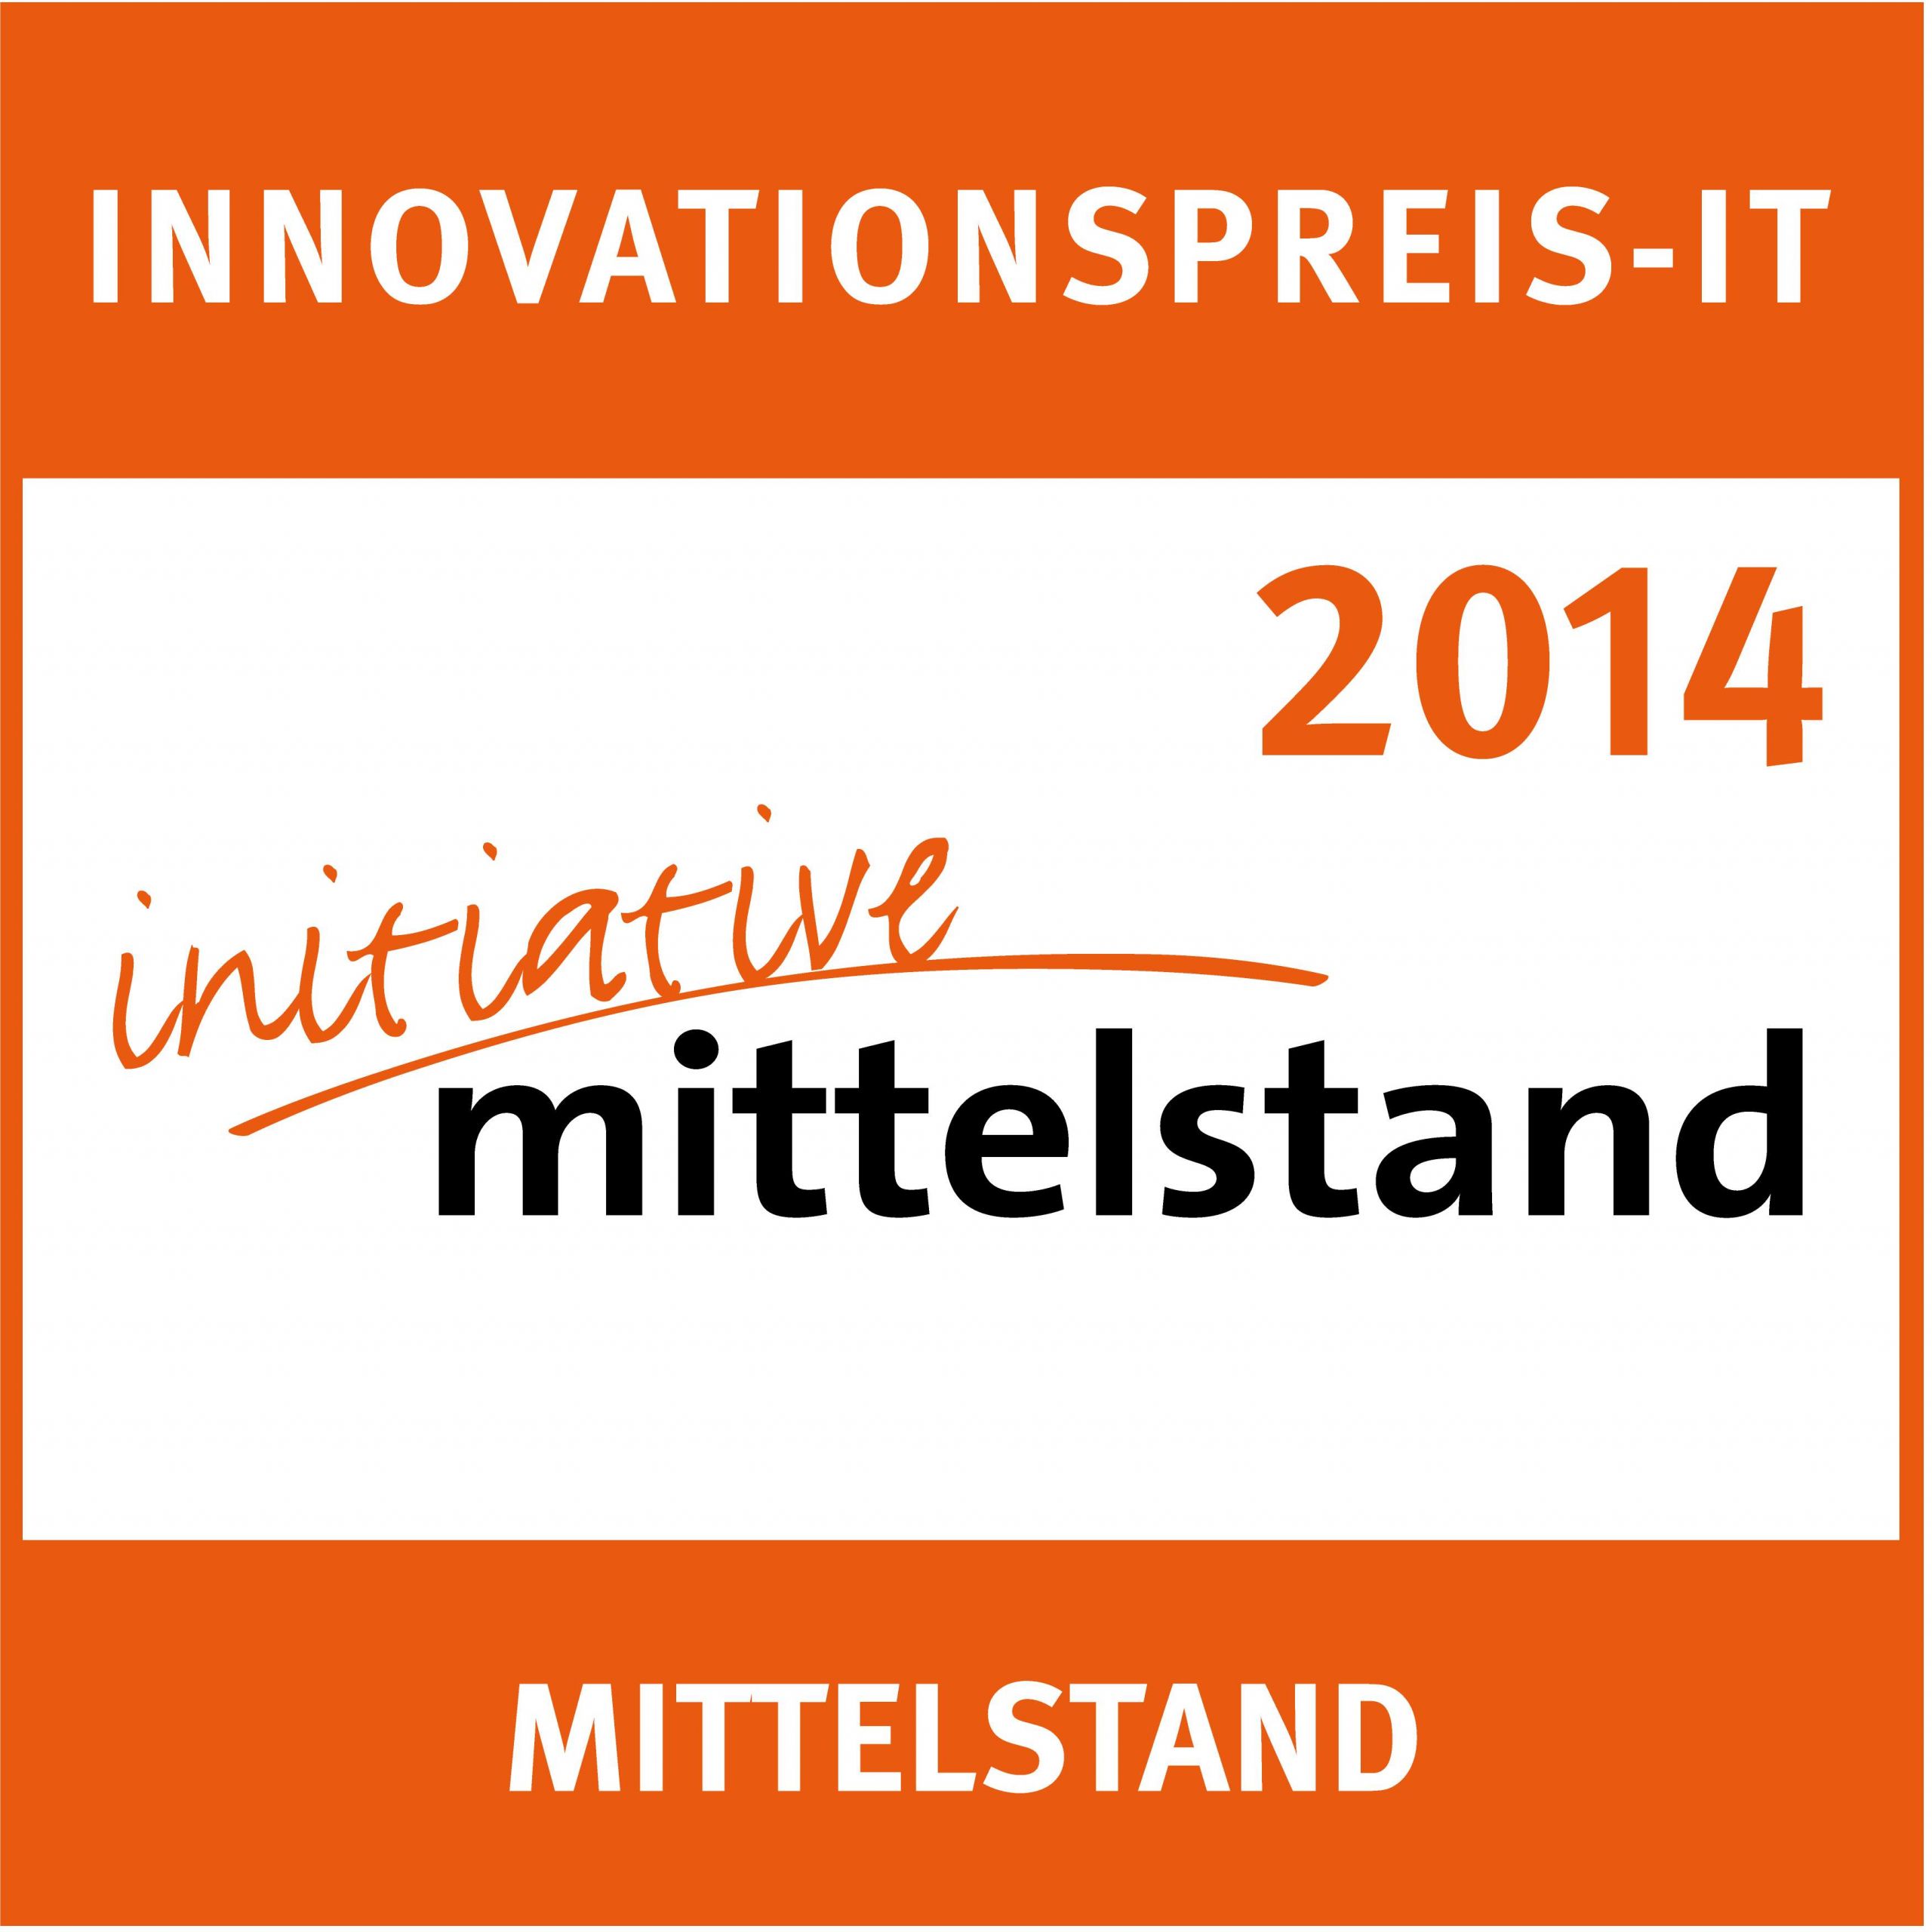 InnovationspreisIT Logo 2014 3500px